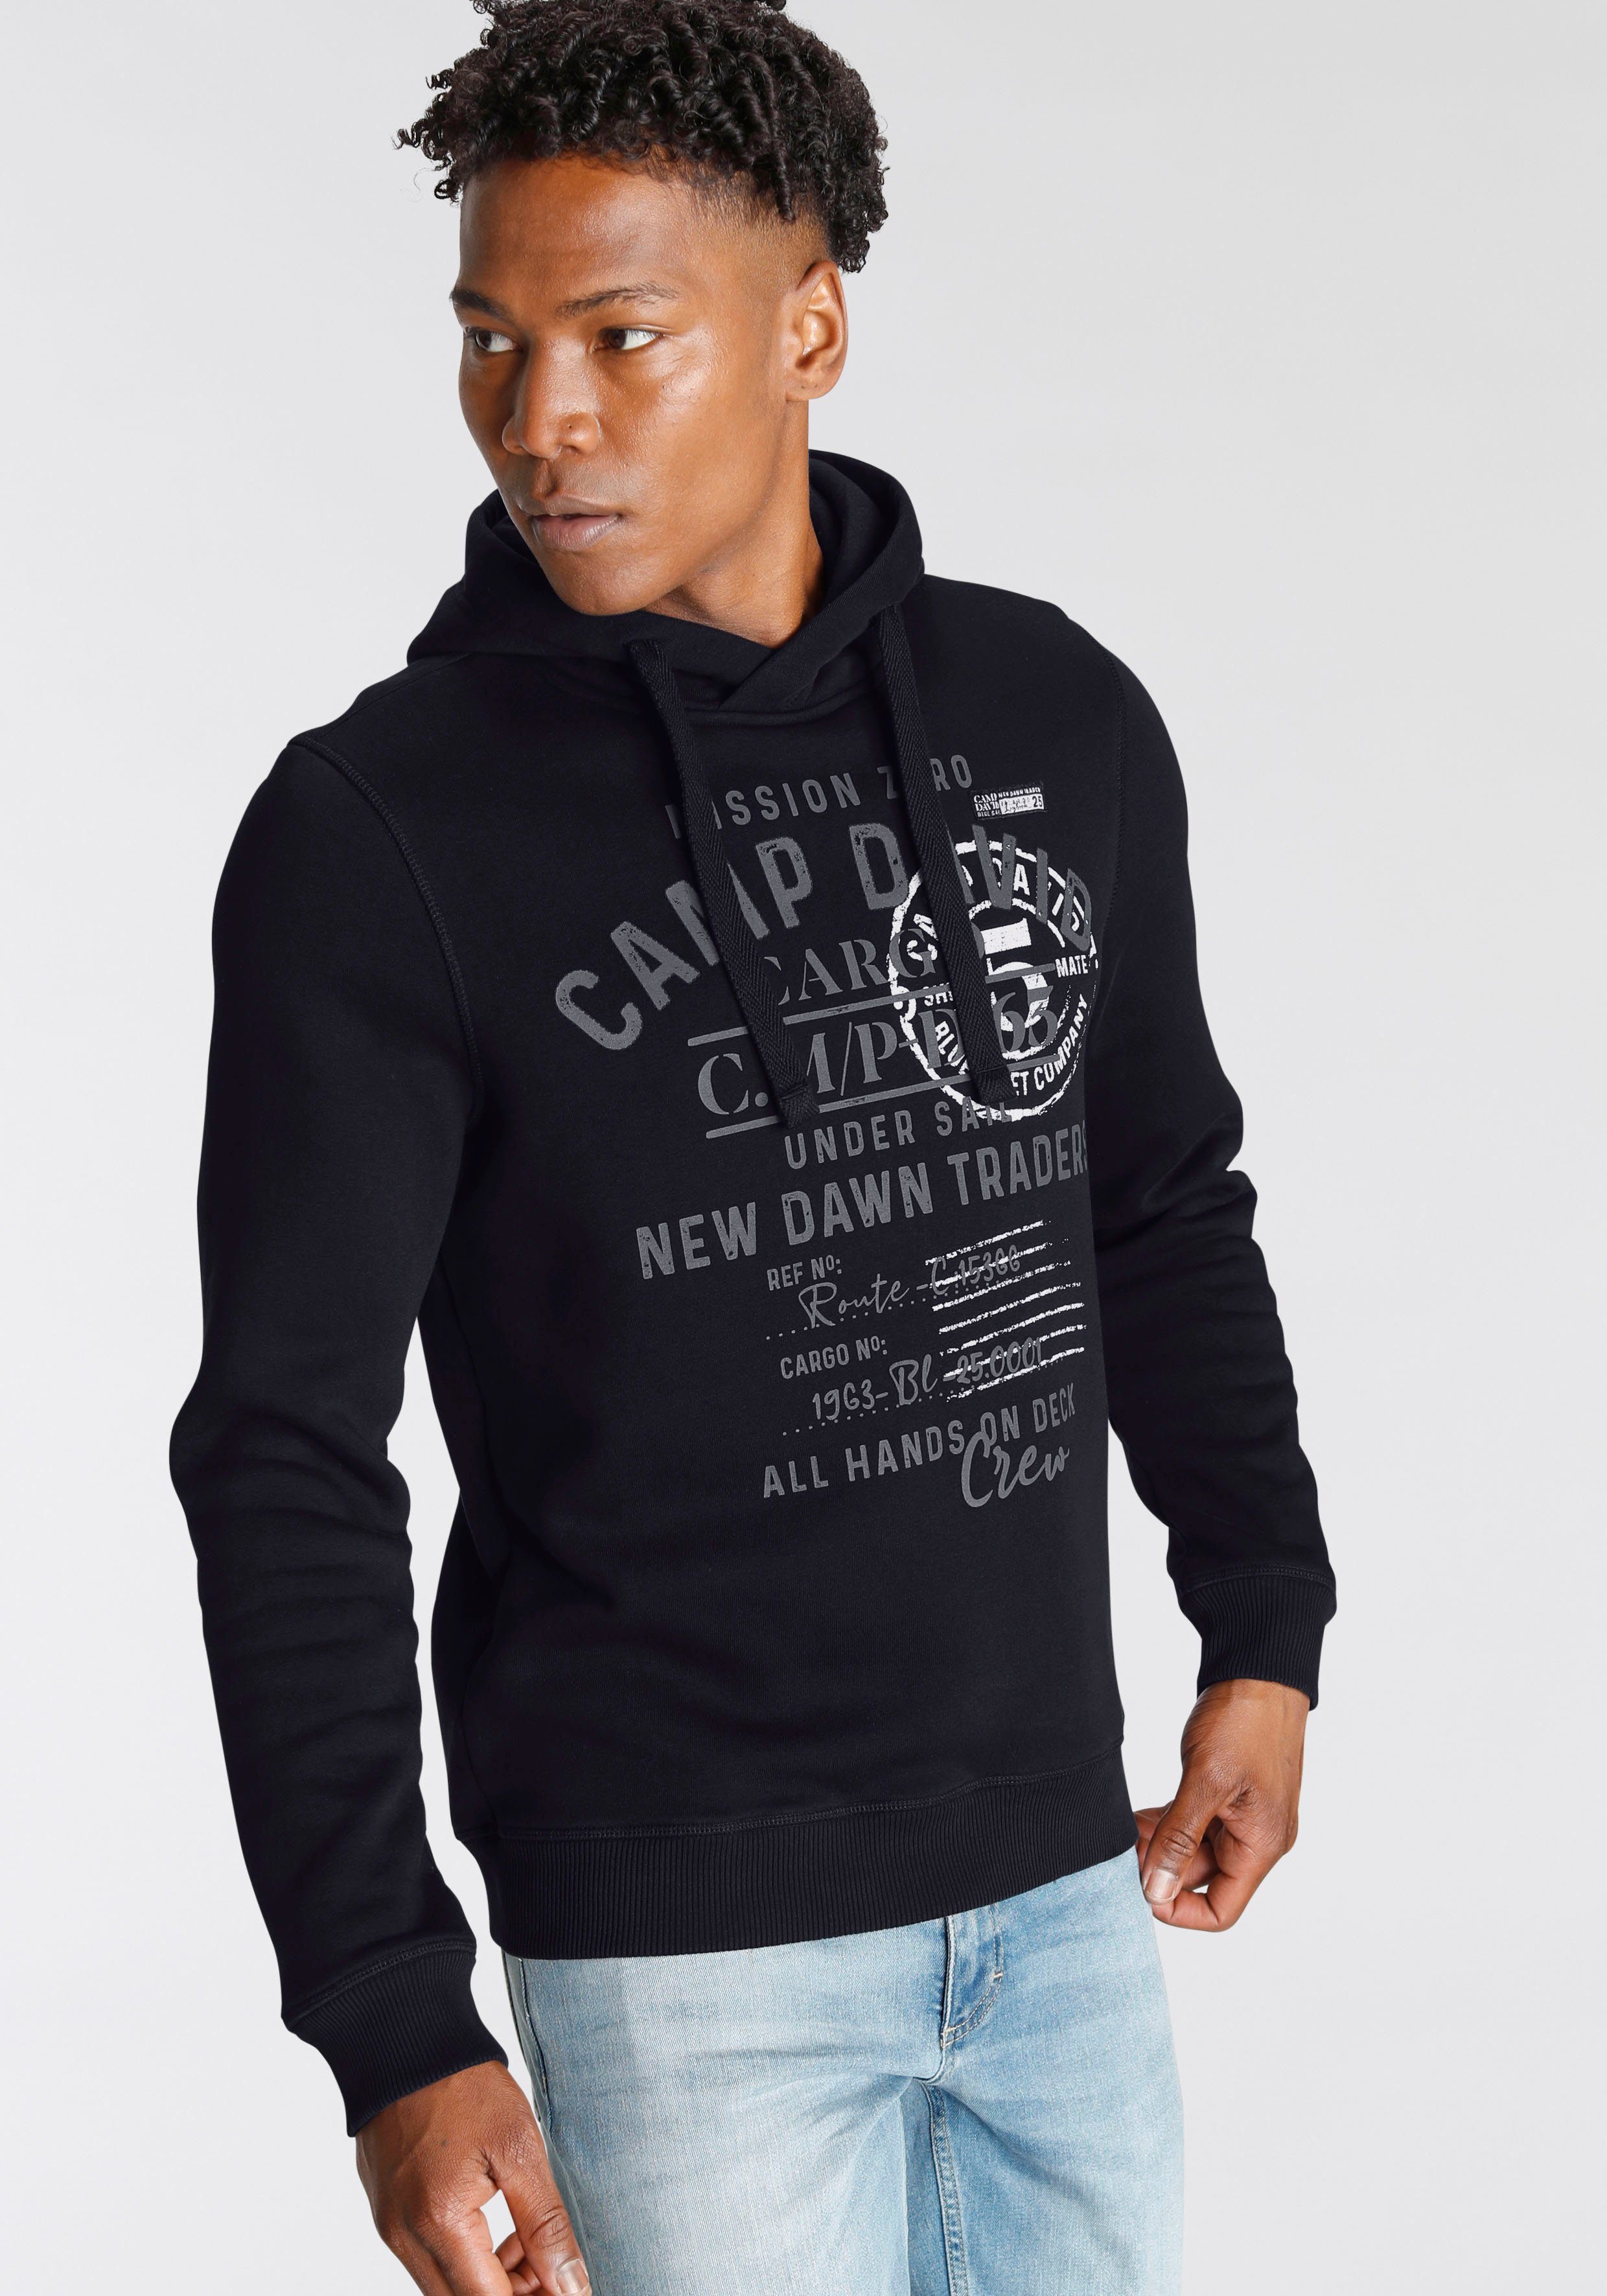 CAMP DAVID Kapuzensweatshirt online kaufen | OTTO